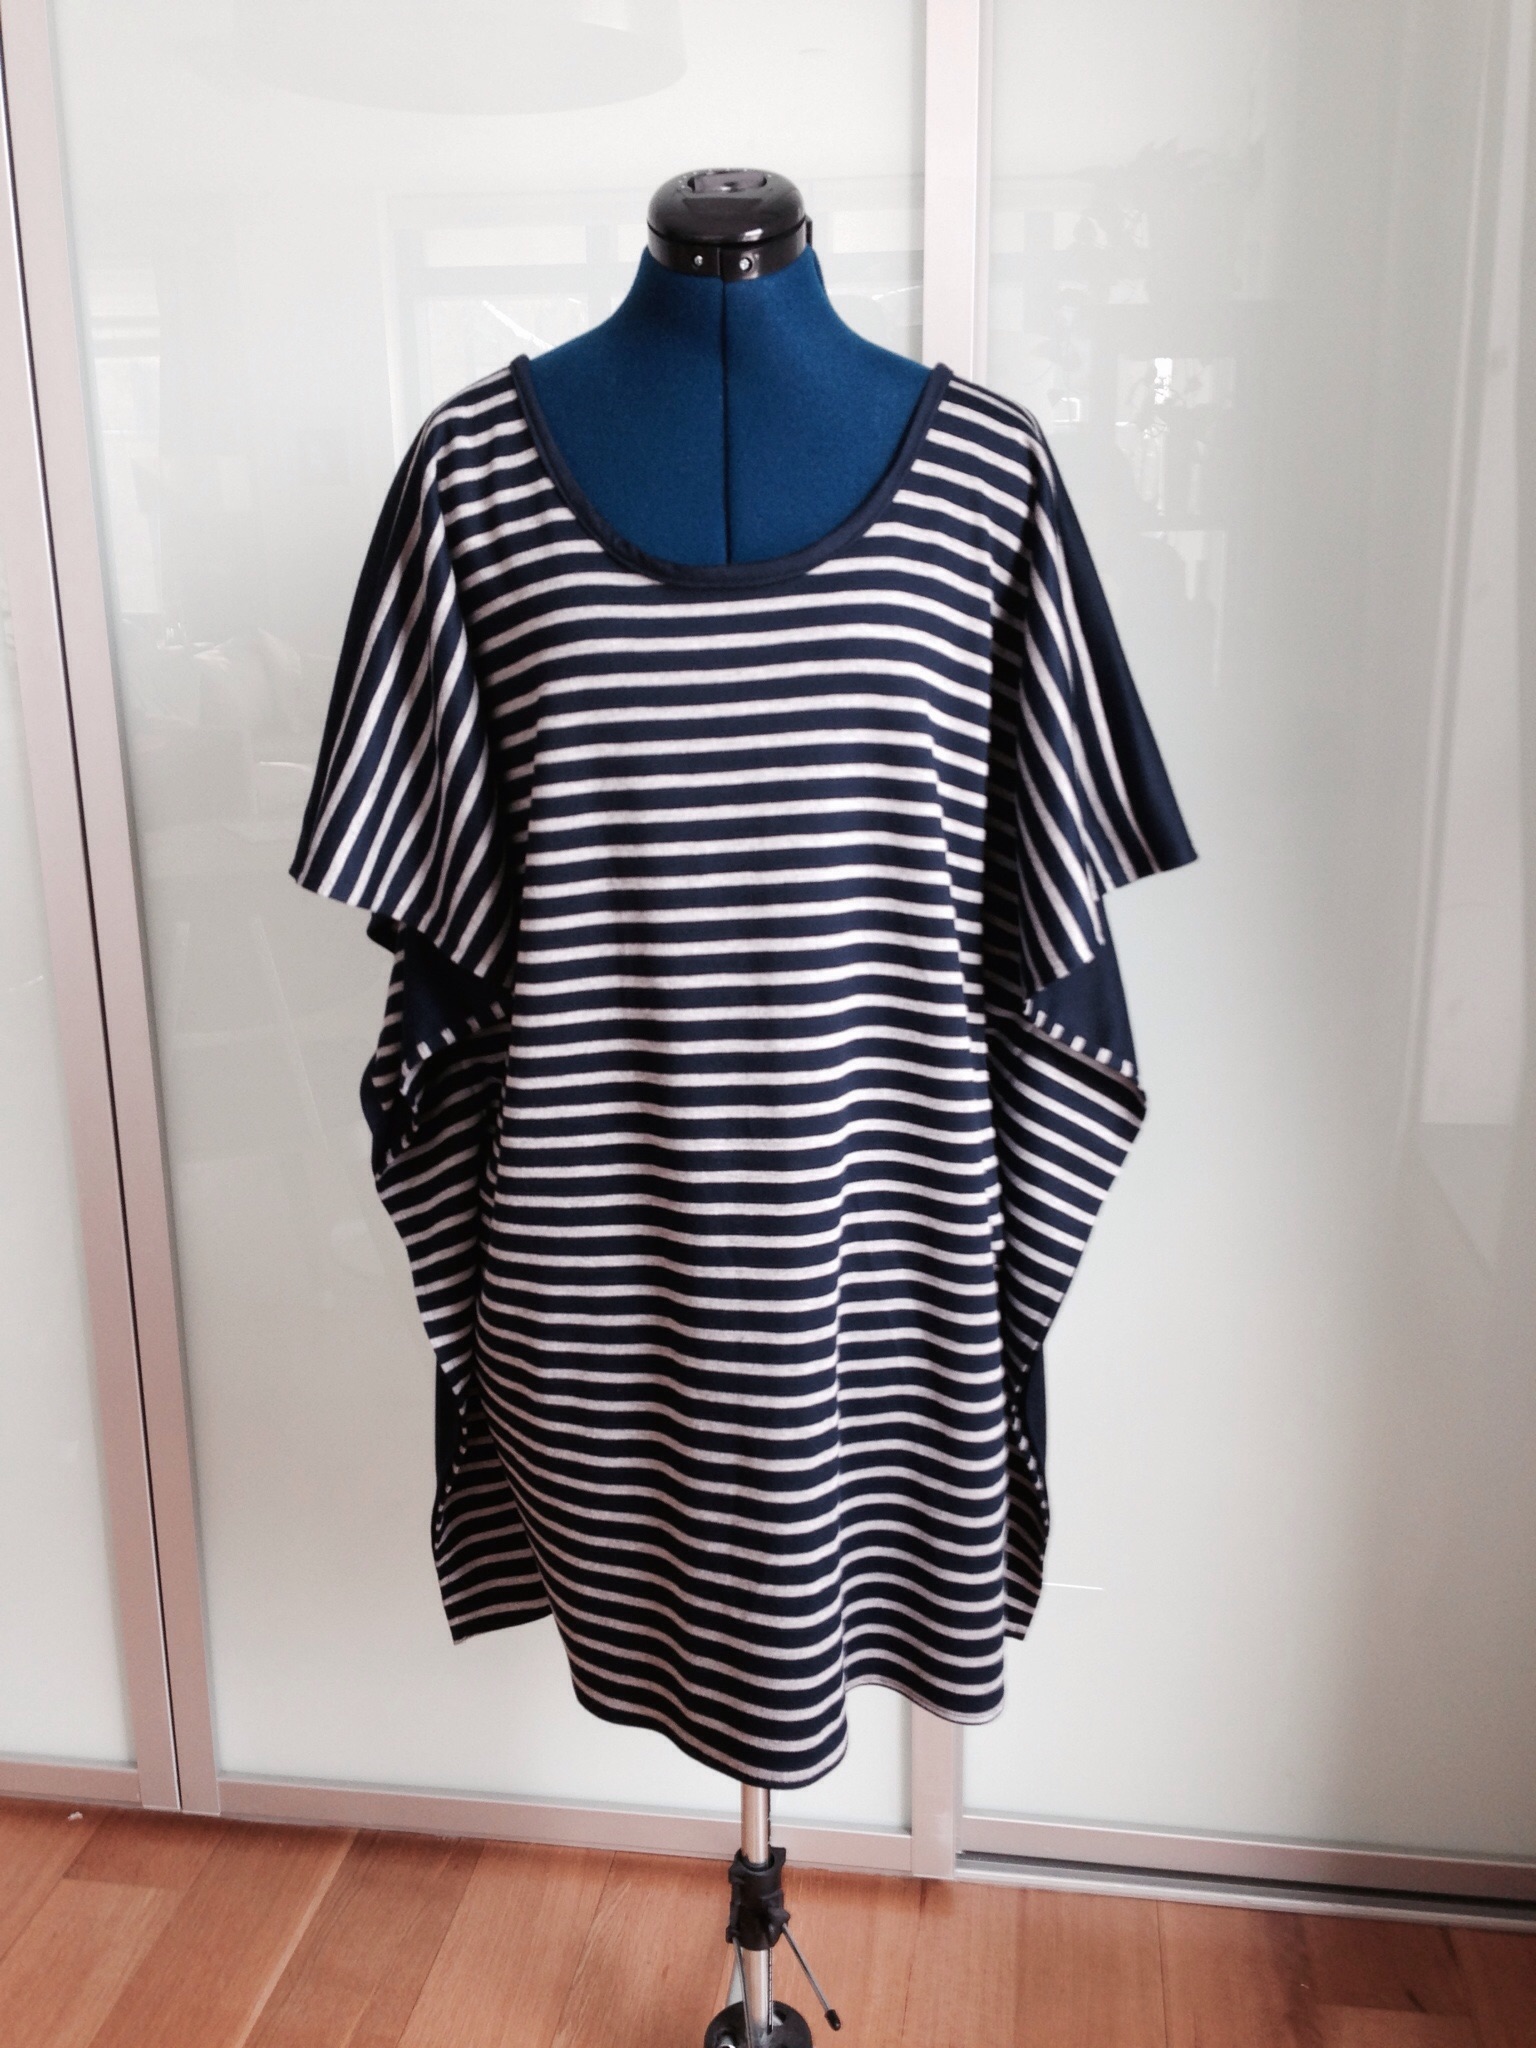 Reversible Manta Ray Dress – Sewing Projects | BurdaStyle.com